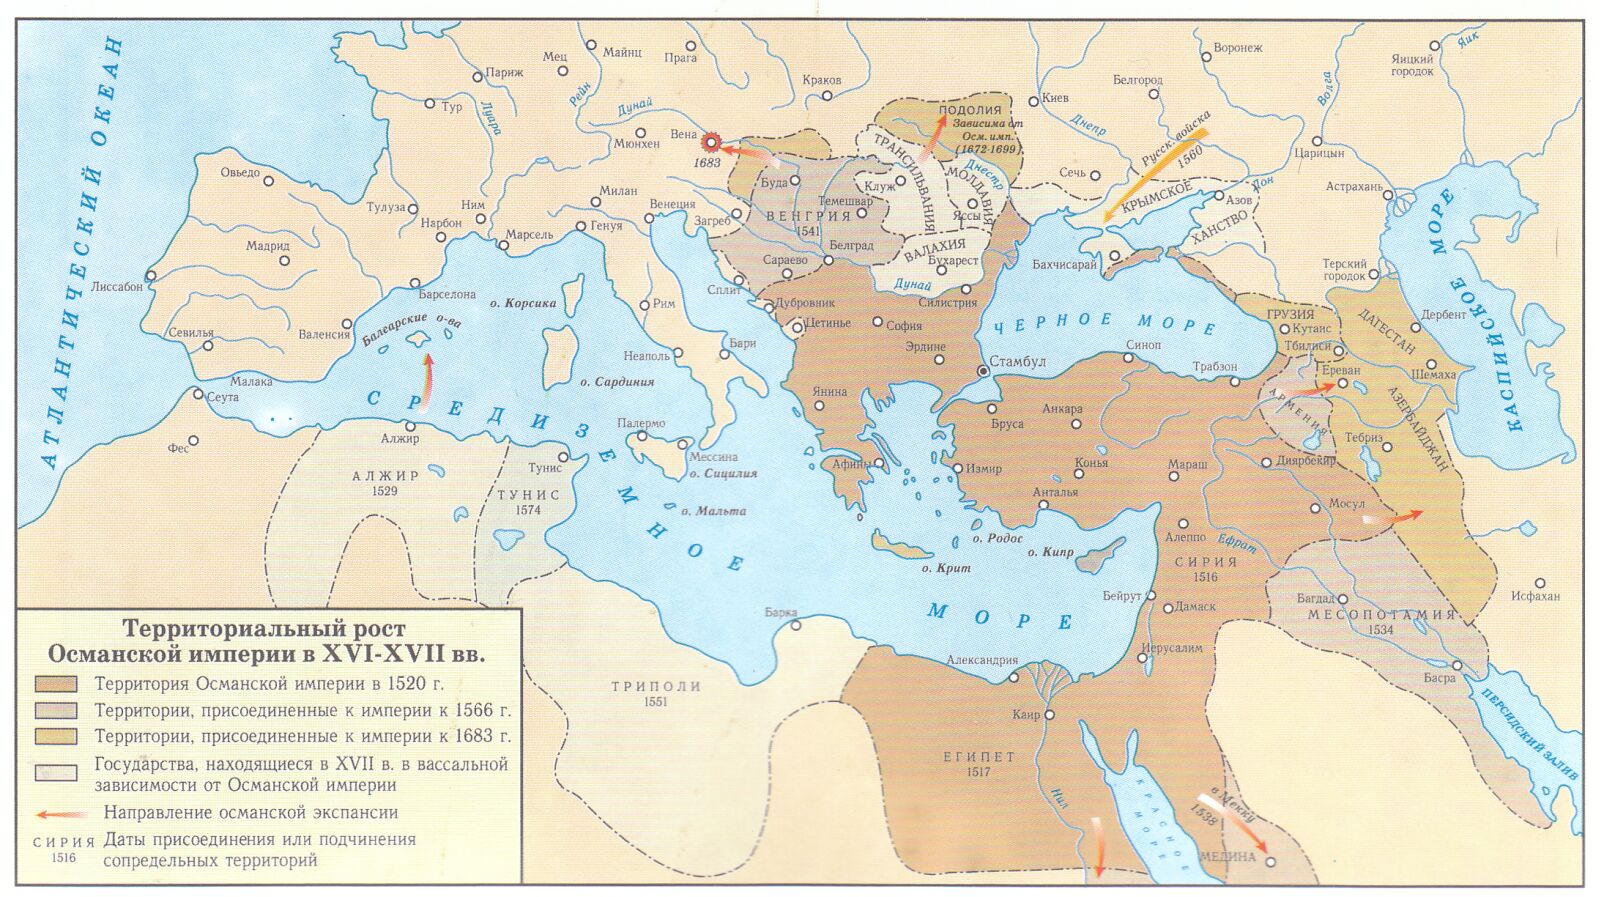 Карта территориального роста Османской империи в XVI-XVII веках.